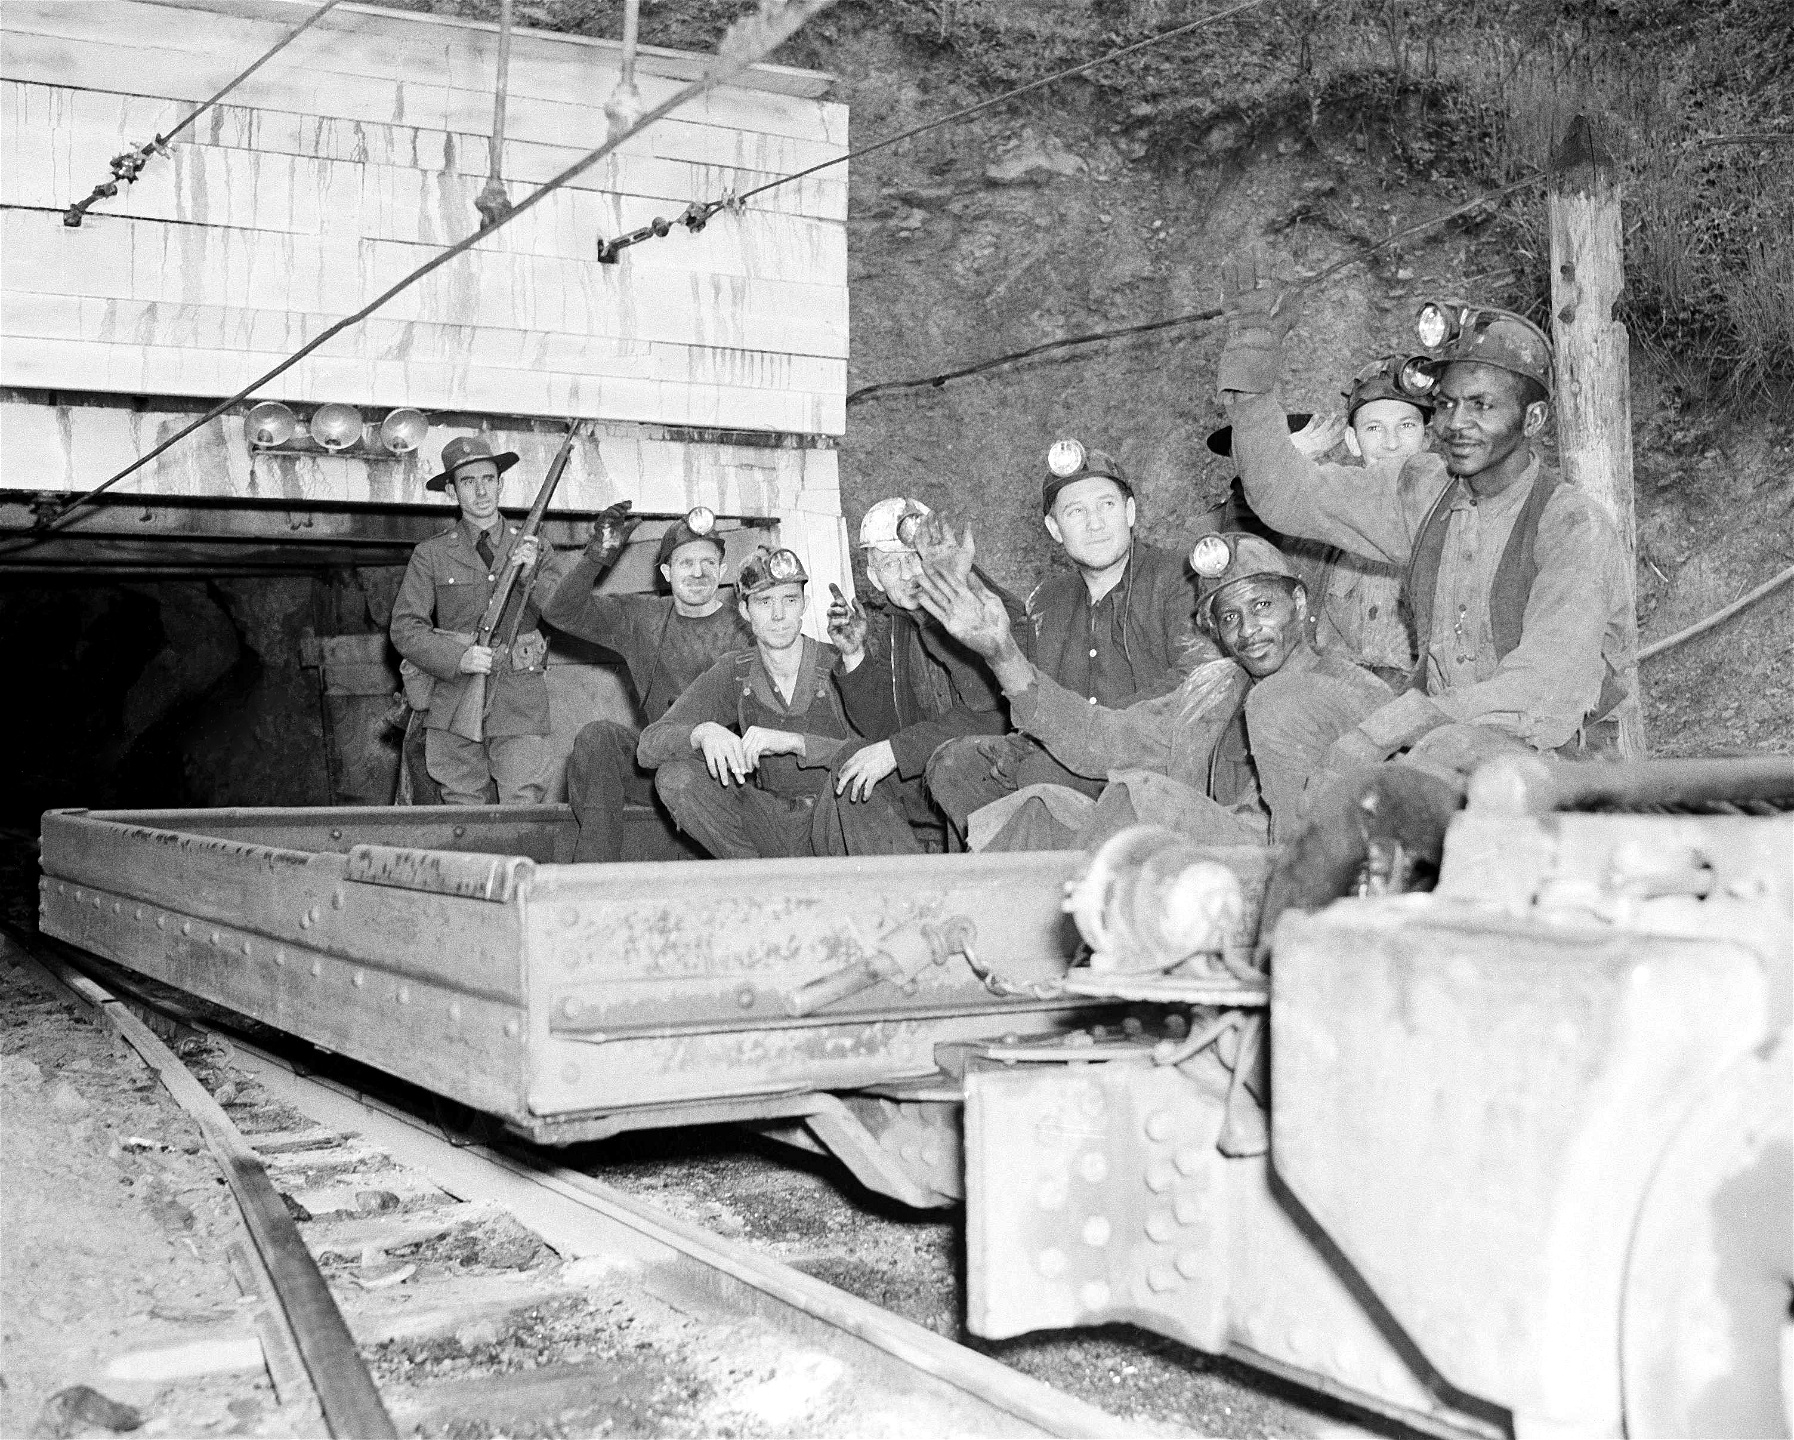 Sktrejkbrytare i Harlan Countrys kolgruvor 1939, eskorterade av väpnad polis. 